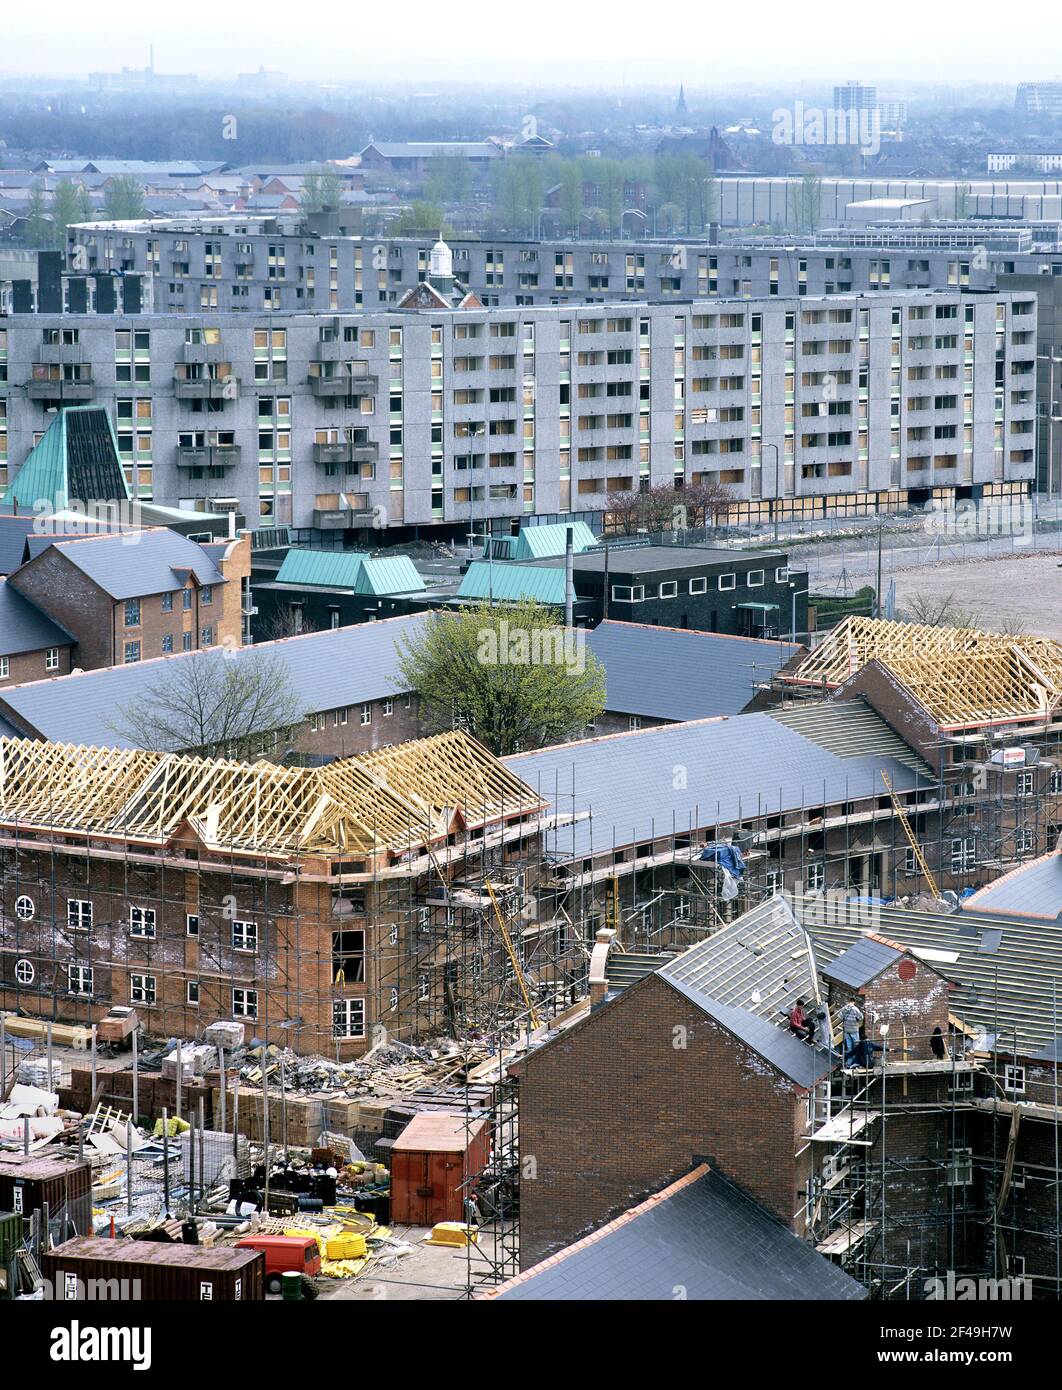 Se están construyendo nuevas casas de la asociación de viviendas en Hulme, Manchester, con algunos de los 1970s Crescent de Hulme atrás, que se embarcaron antes de la demolición. Foto de stock